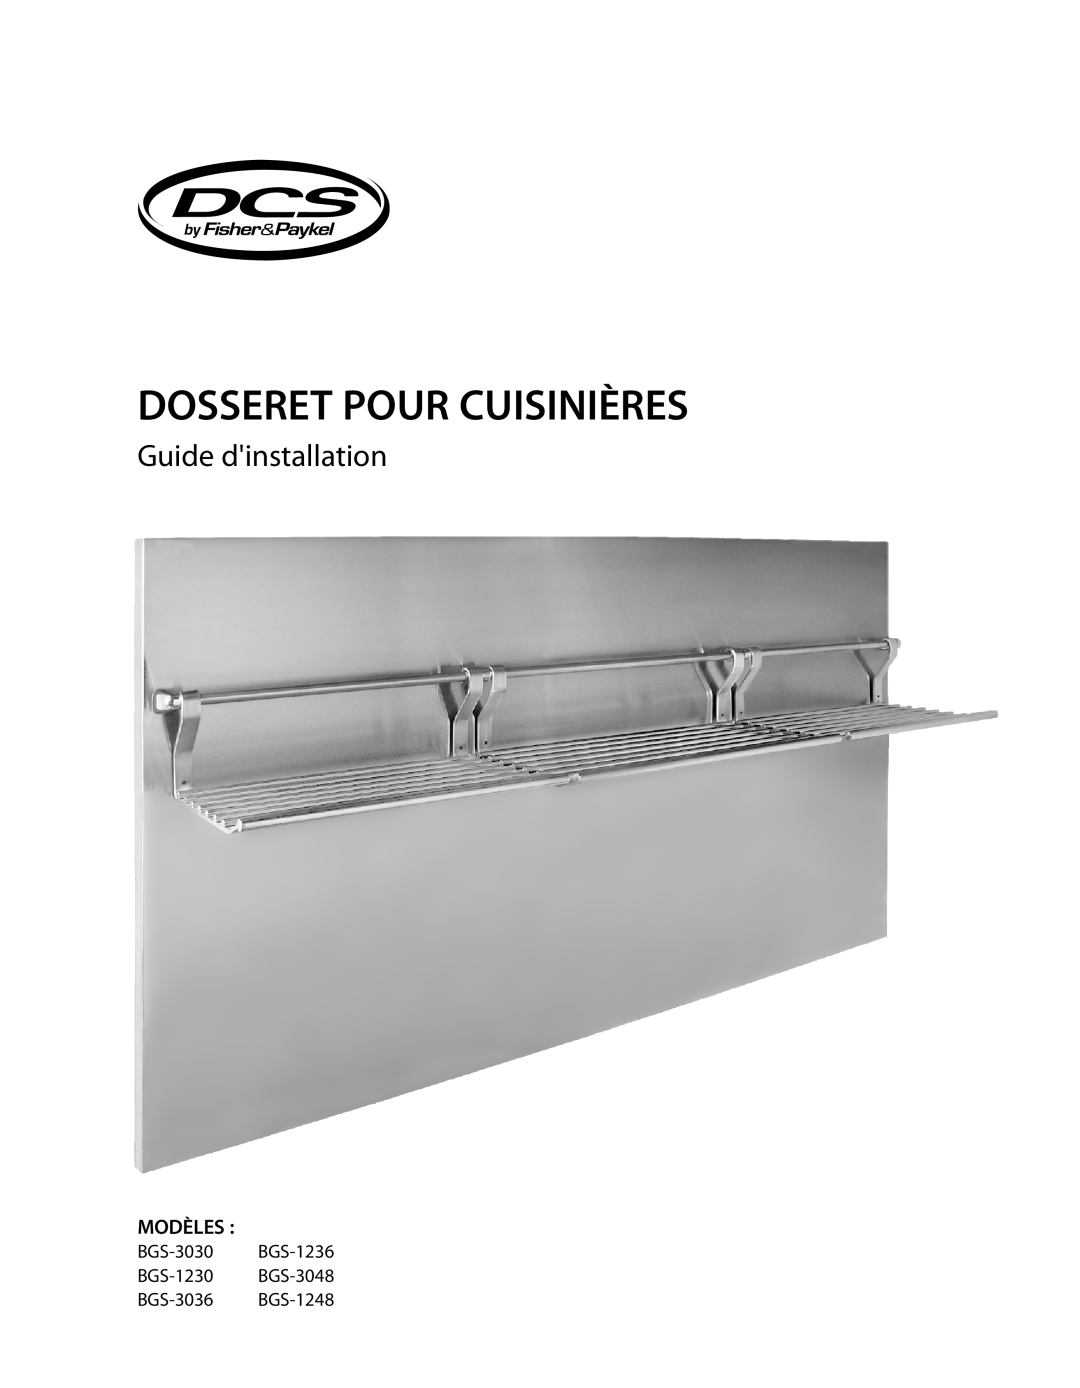 DCS BGS-1230, BGS-3030, BGS-3048, BGS-3036, BGS-1236, BGS-1248 manual Dosseret Pour Cuisinières, Guide dinstallation, Modèles 